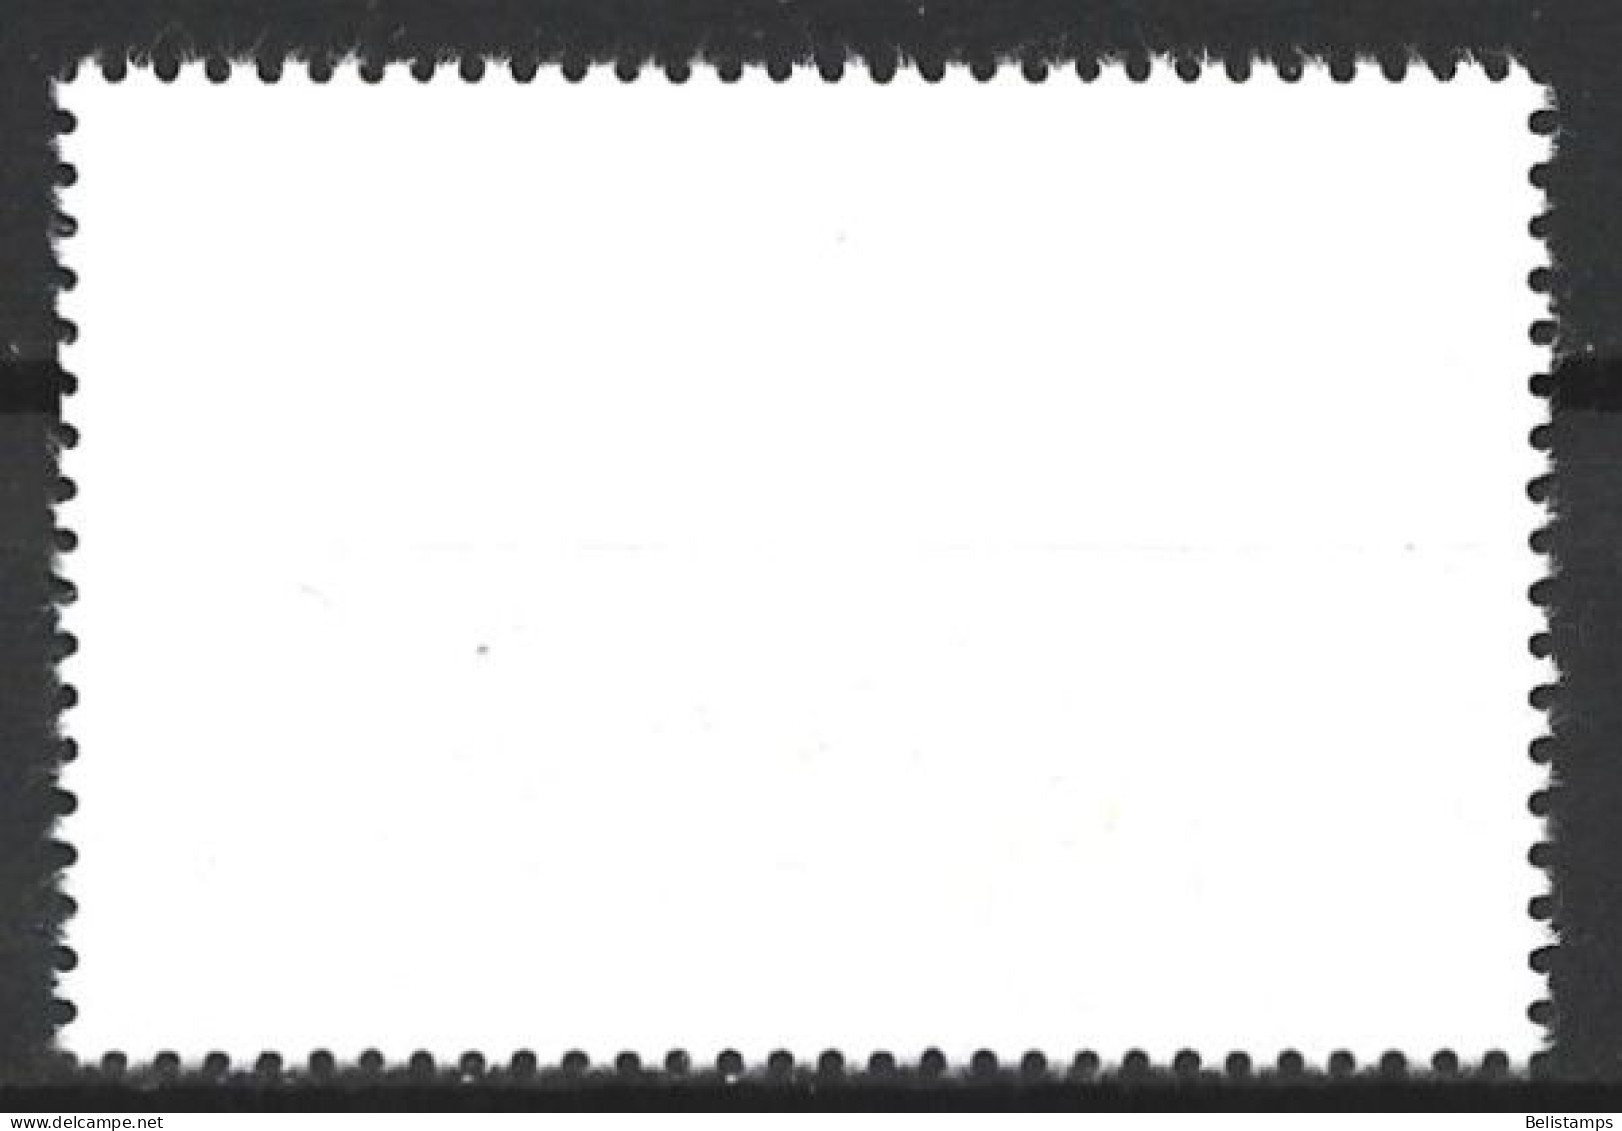 Cuba 1977. Scott #2163 (U) Intl. Airmail Service, 50th Anniv. - Usati